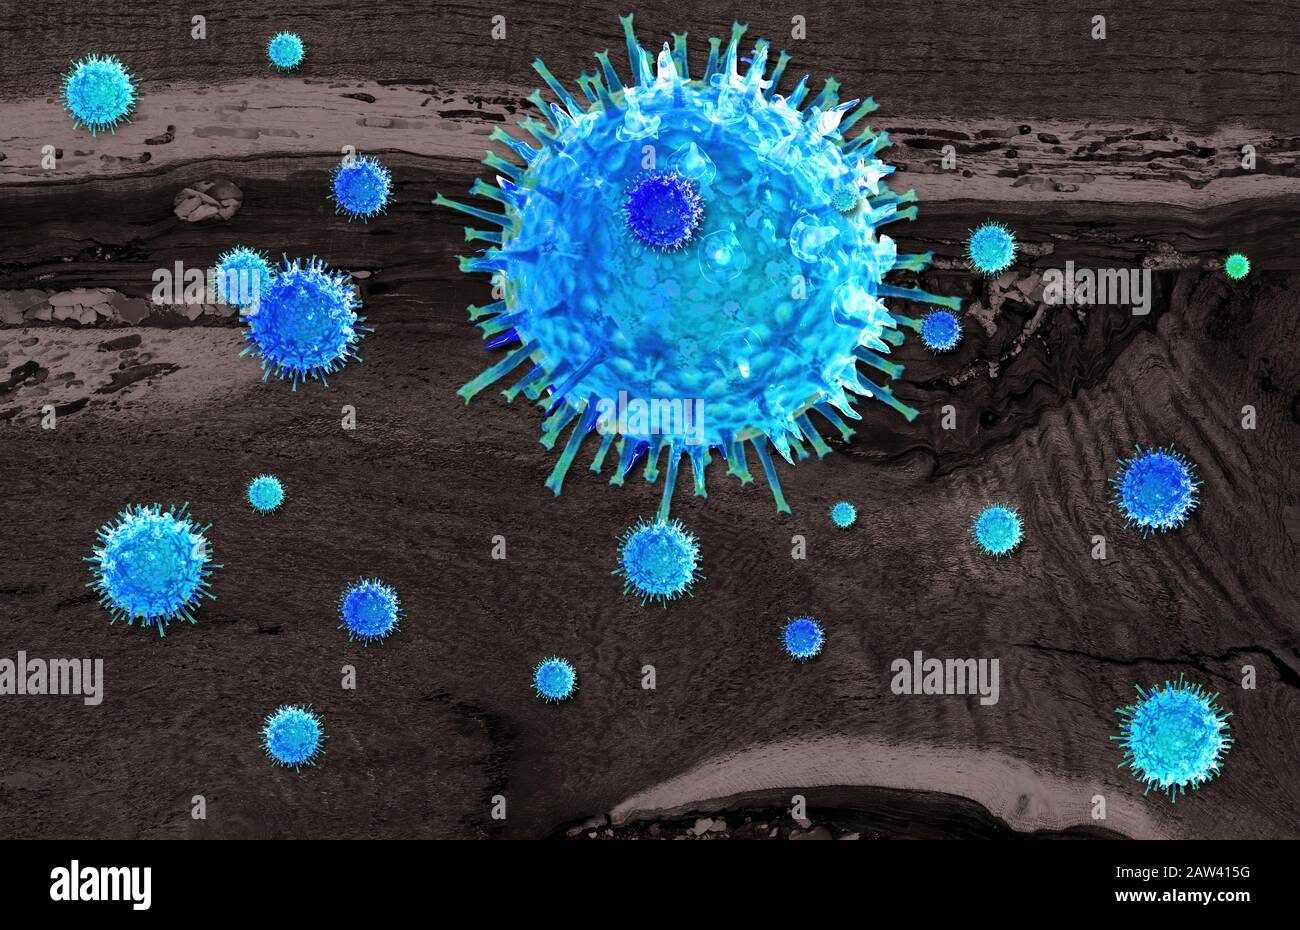 Illustration virale infectieuse qui réplique les cellules vivantes d'un organisme. Banque D'Images